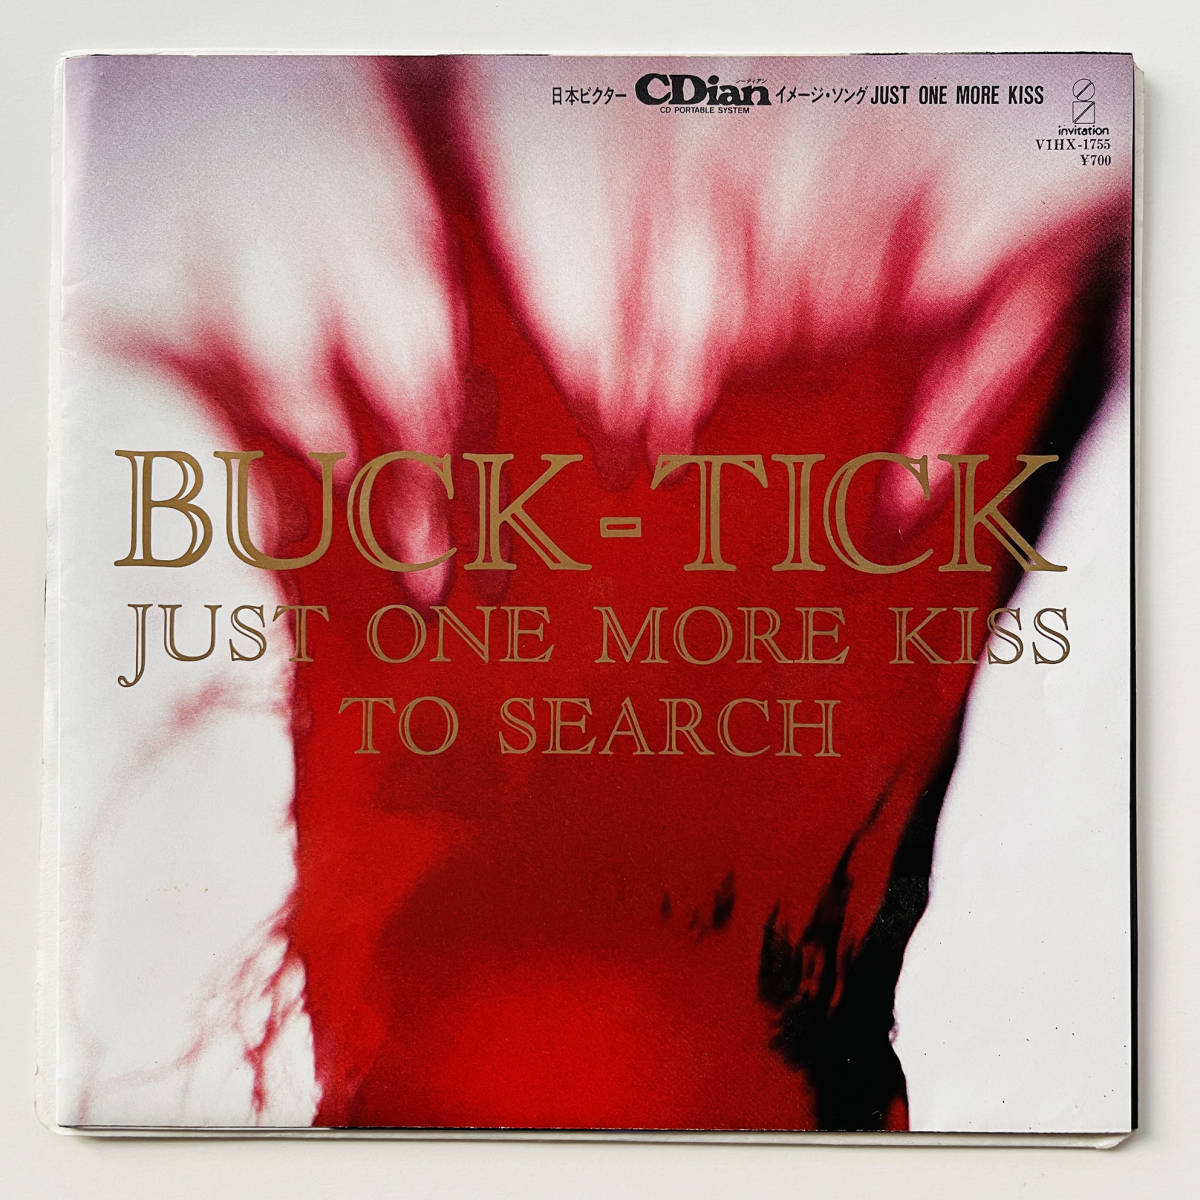 貴重 初回盤 7インチレコード ポスタージャケット〔 BUCK-TICK - Just One More Kiss 〕櫻井敦司 バクチク ジャスト・ワン・モア・キス_画像1